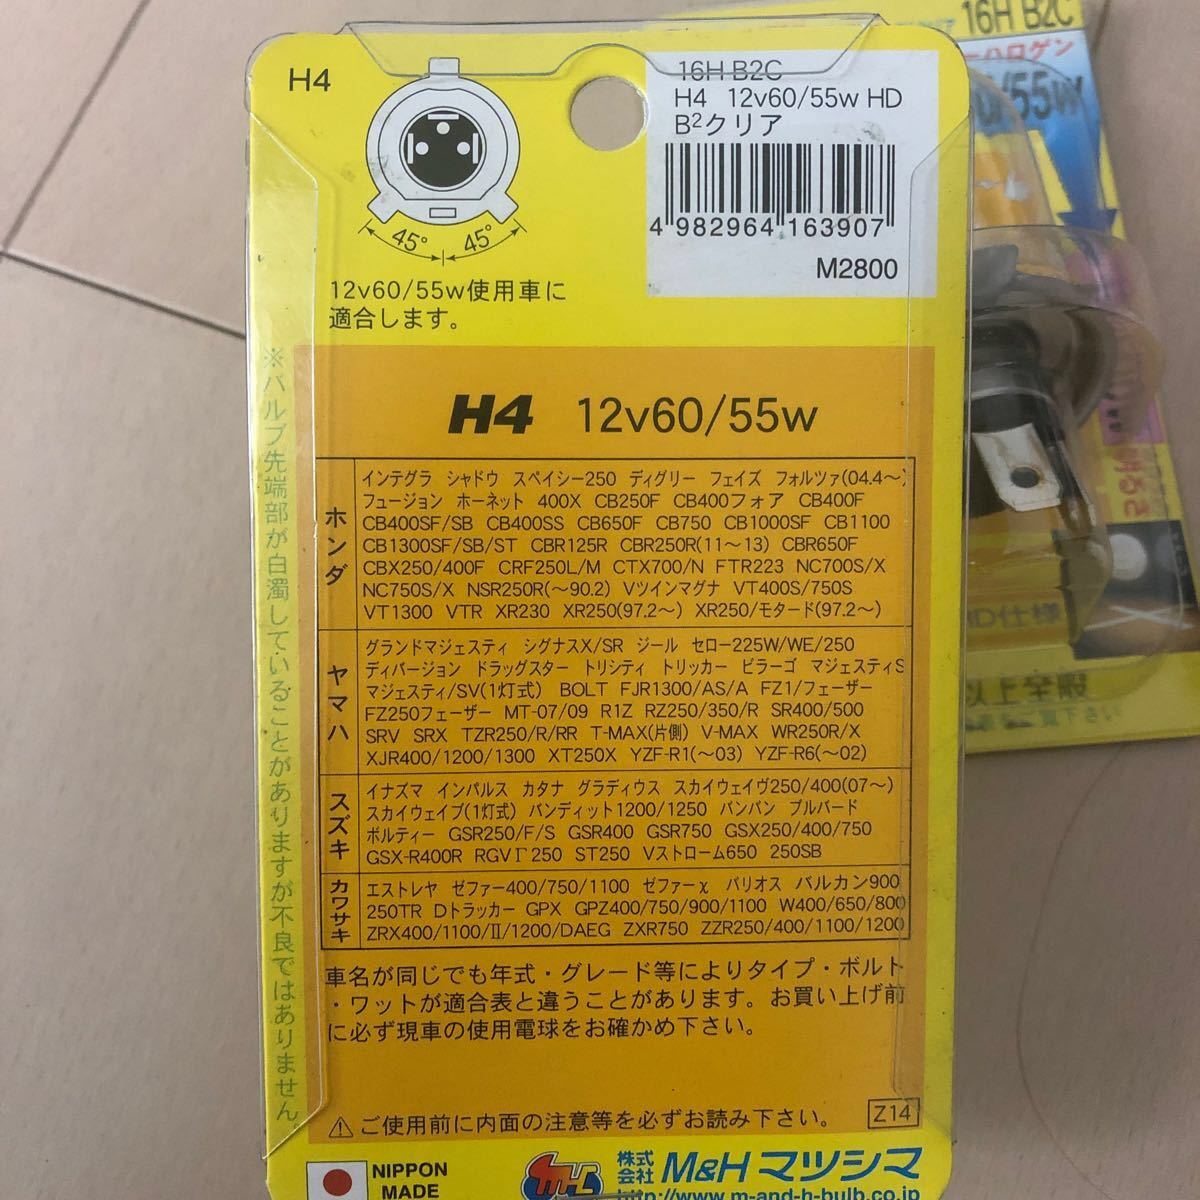 MHマツシマ H-4 12V60/55W (B2CL) 16H 16HB2C ライト バルブ｜PayPayフリマ